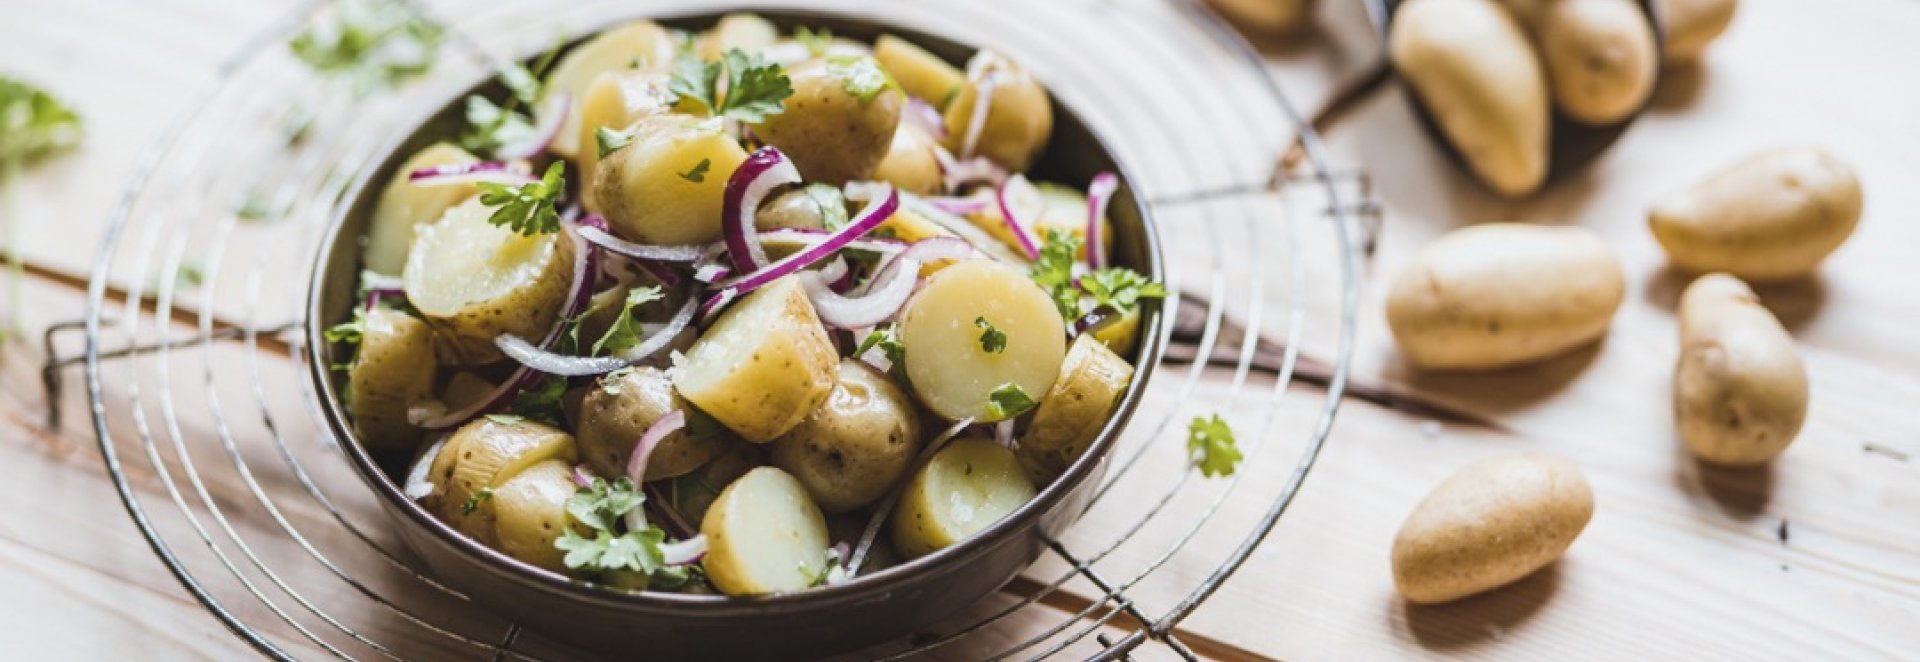 Jaké brambory do salátu, kaše, nebo coby přílohu?